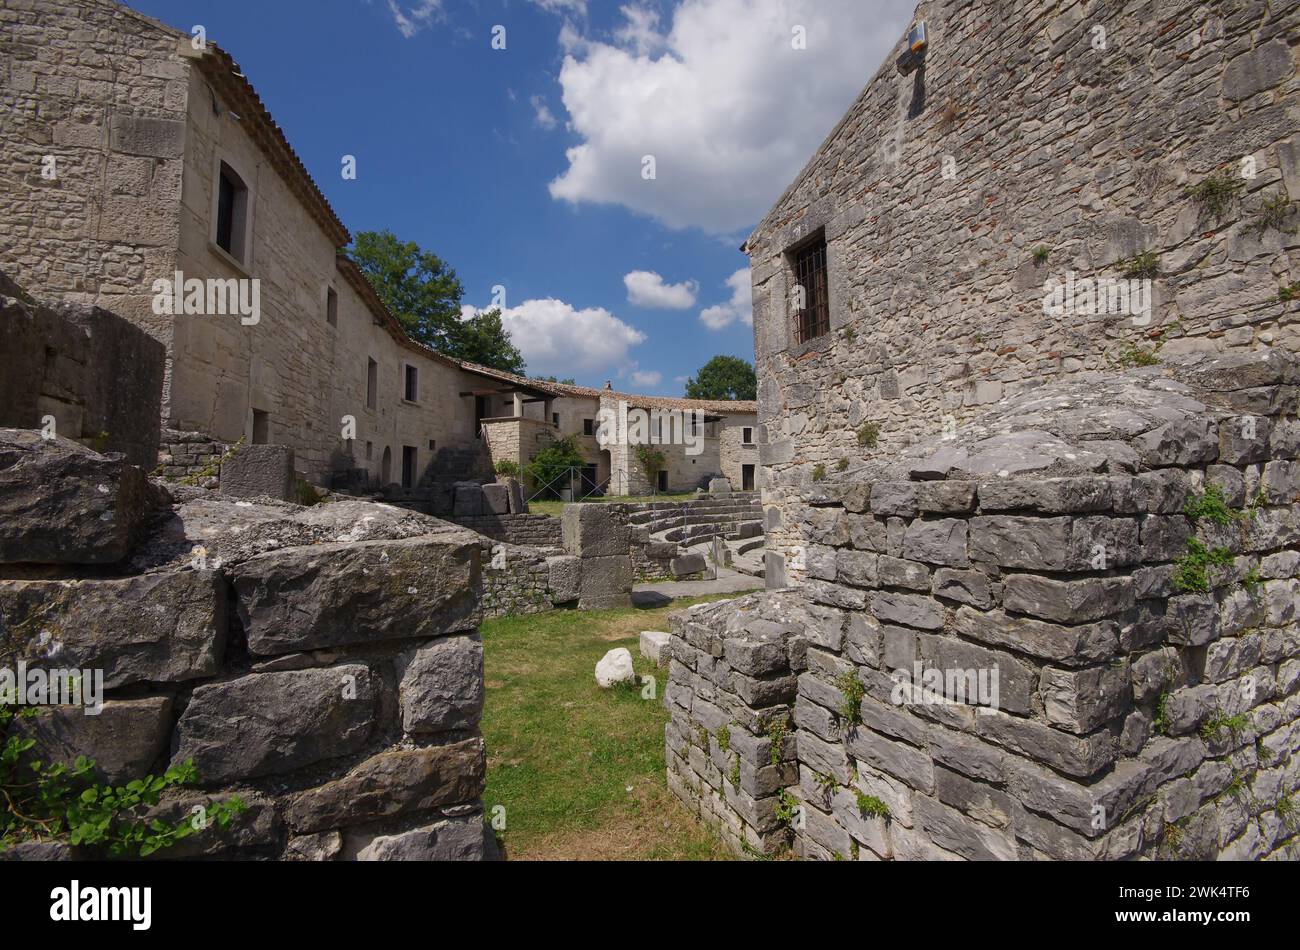 Un ingresso al teatro, sito archeologico di Altilia, Sepino, Molise, Italia. Foto Stock